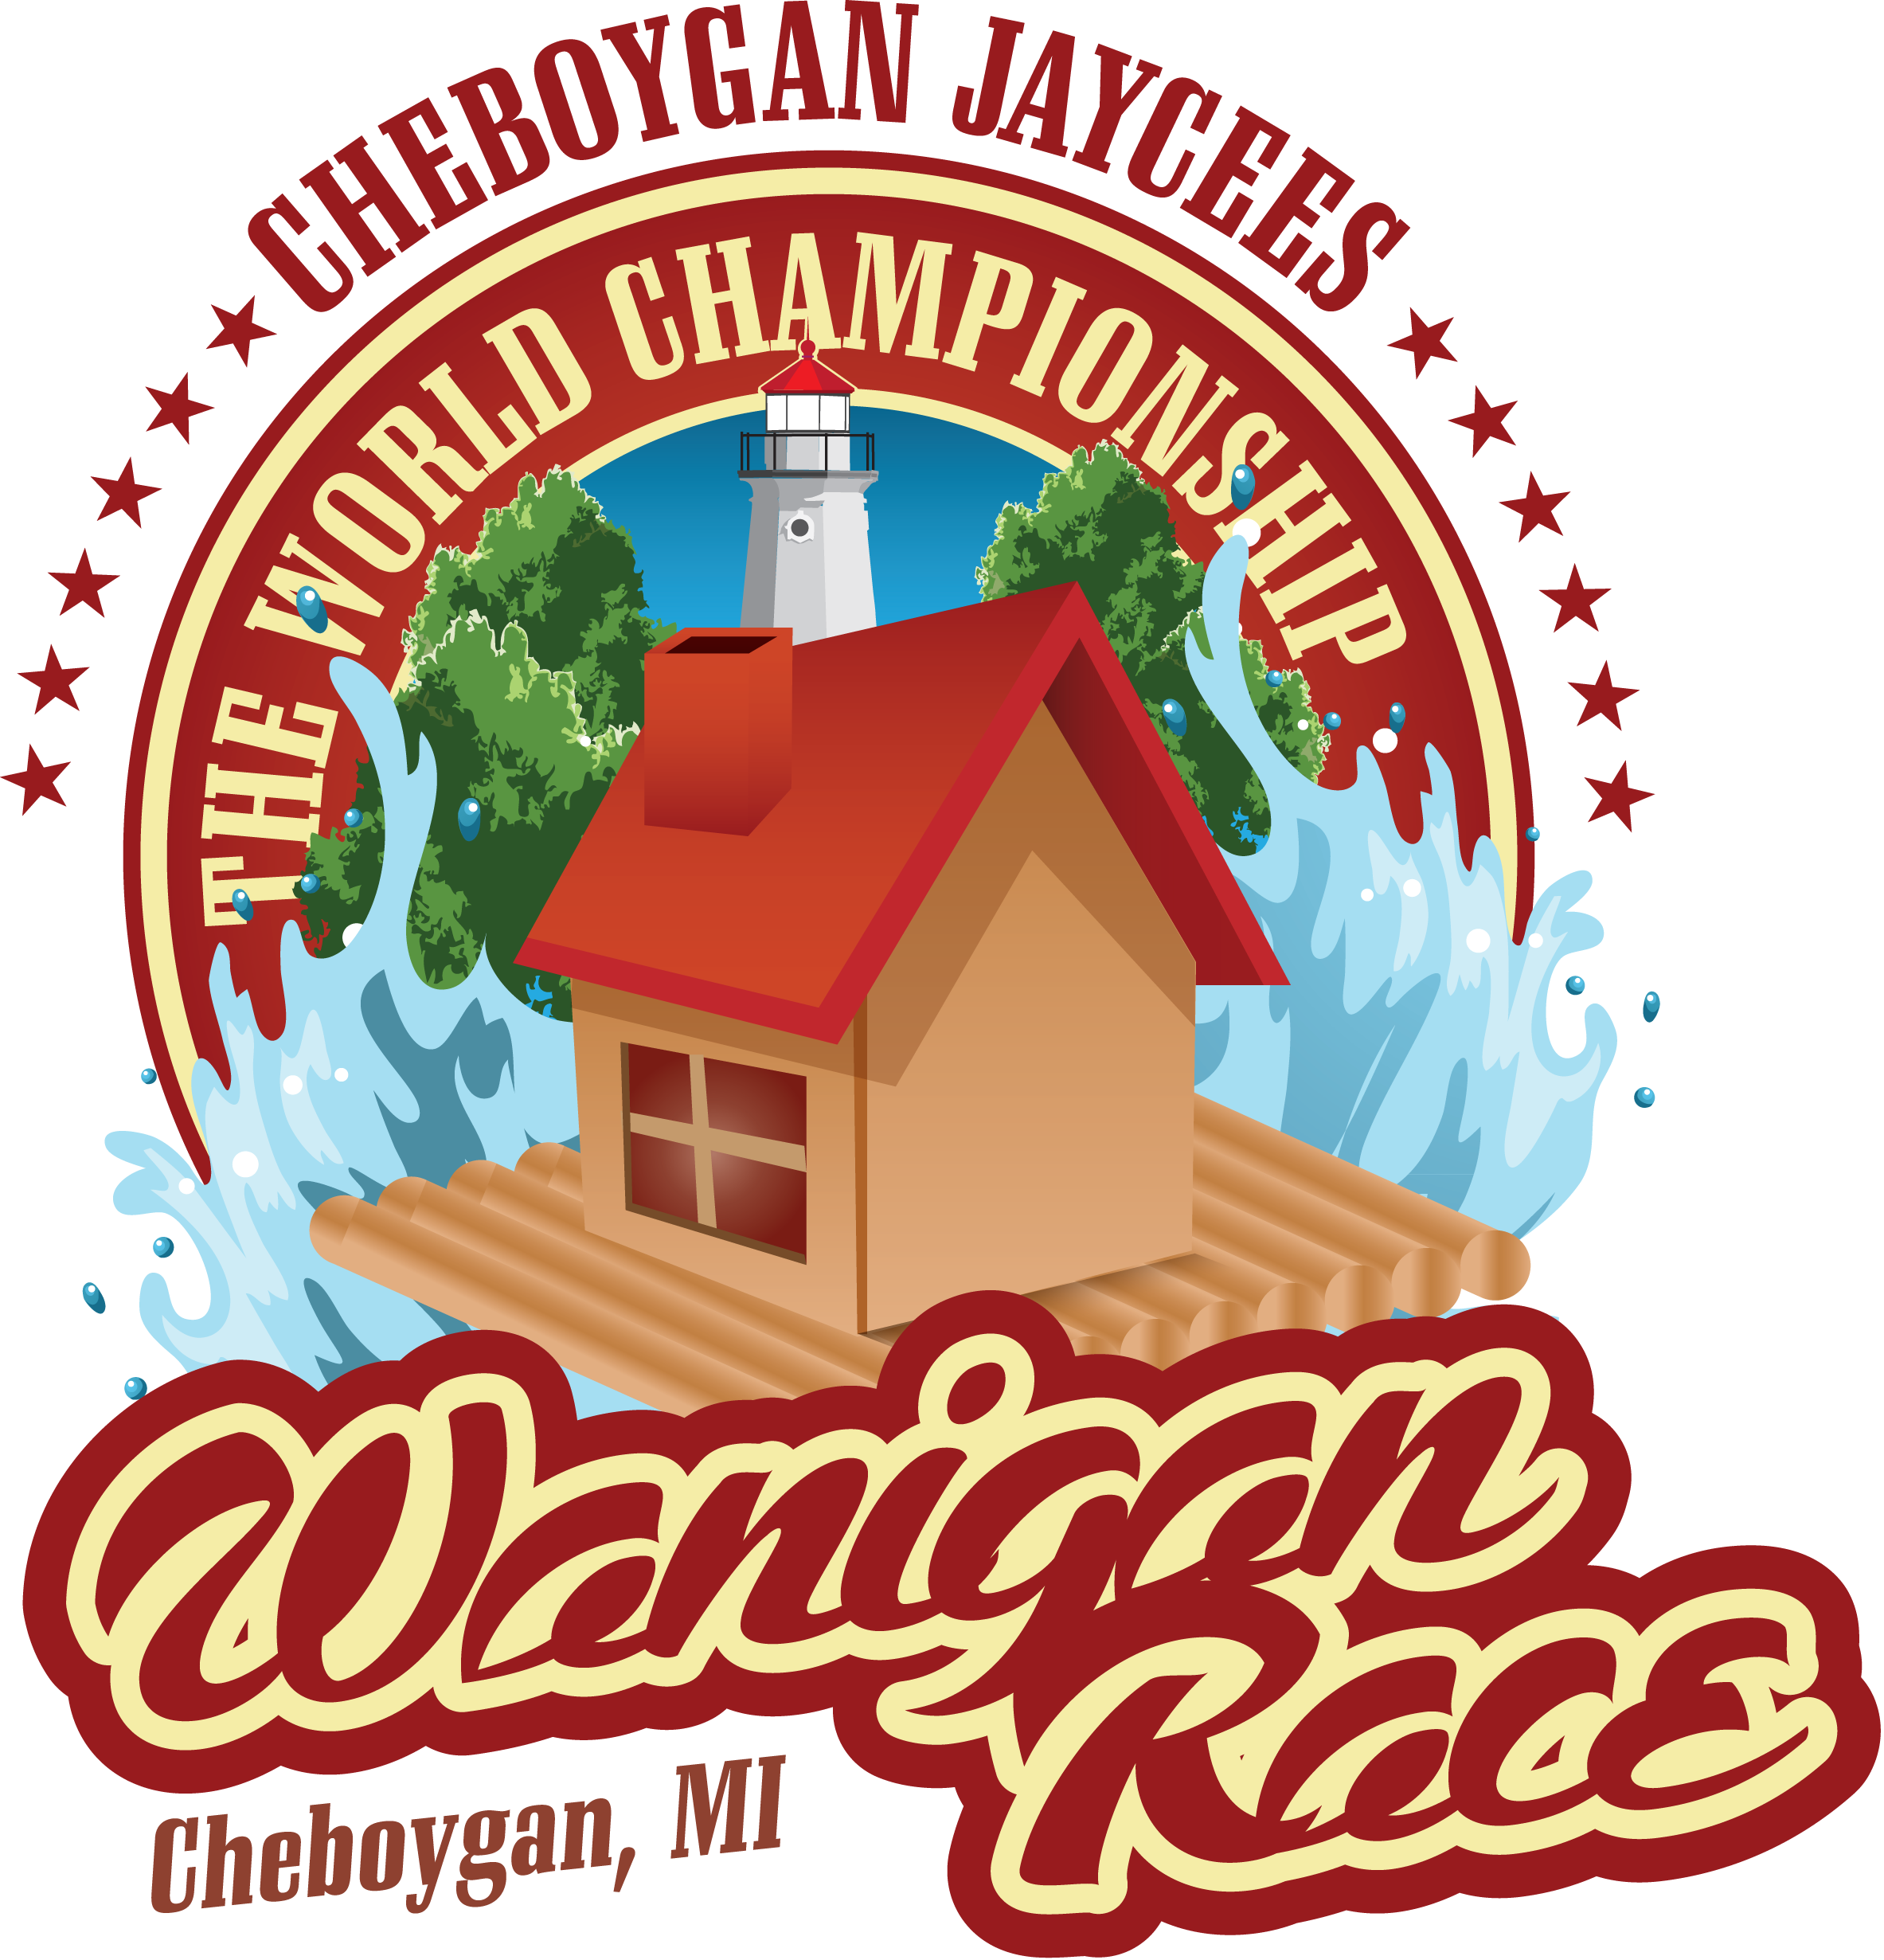 2014 World Championship Wanigan Race 